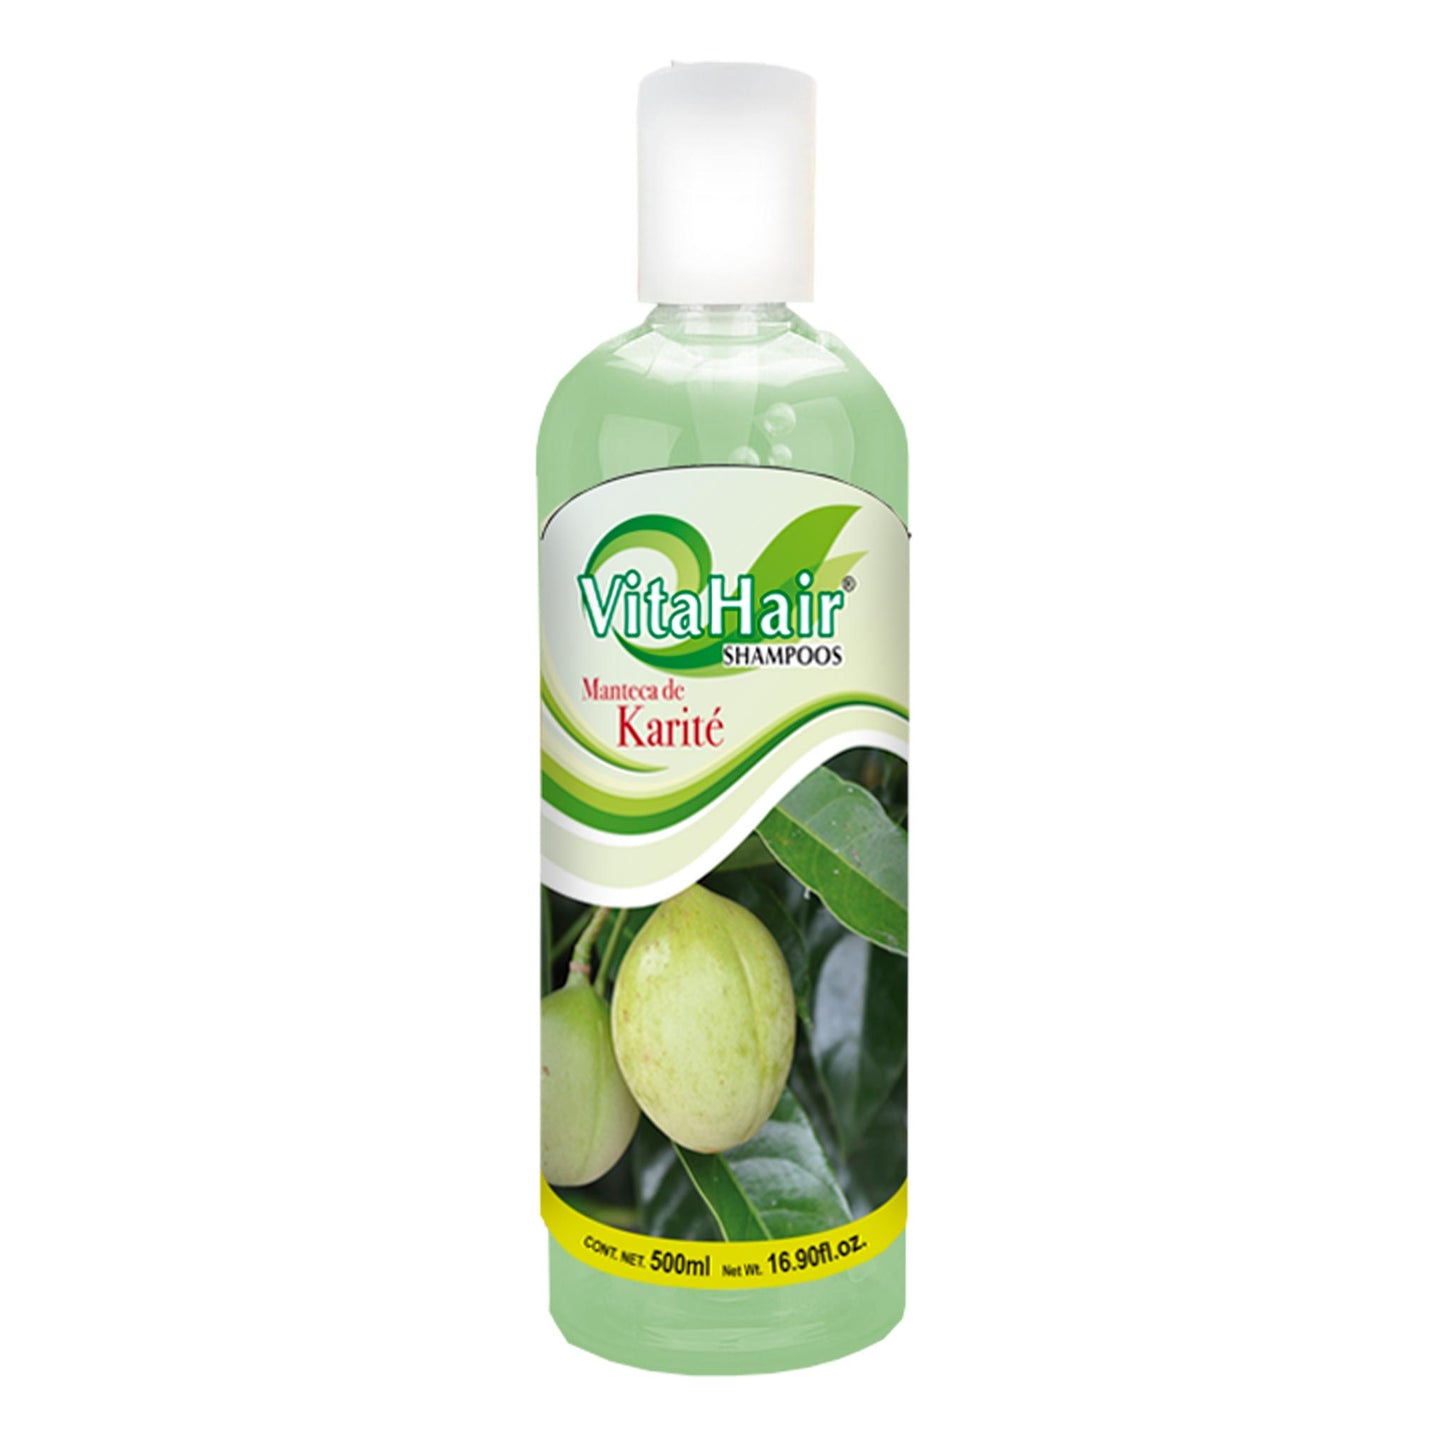 VITAHAIR ® shampoo de karité 500ml